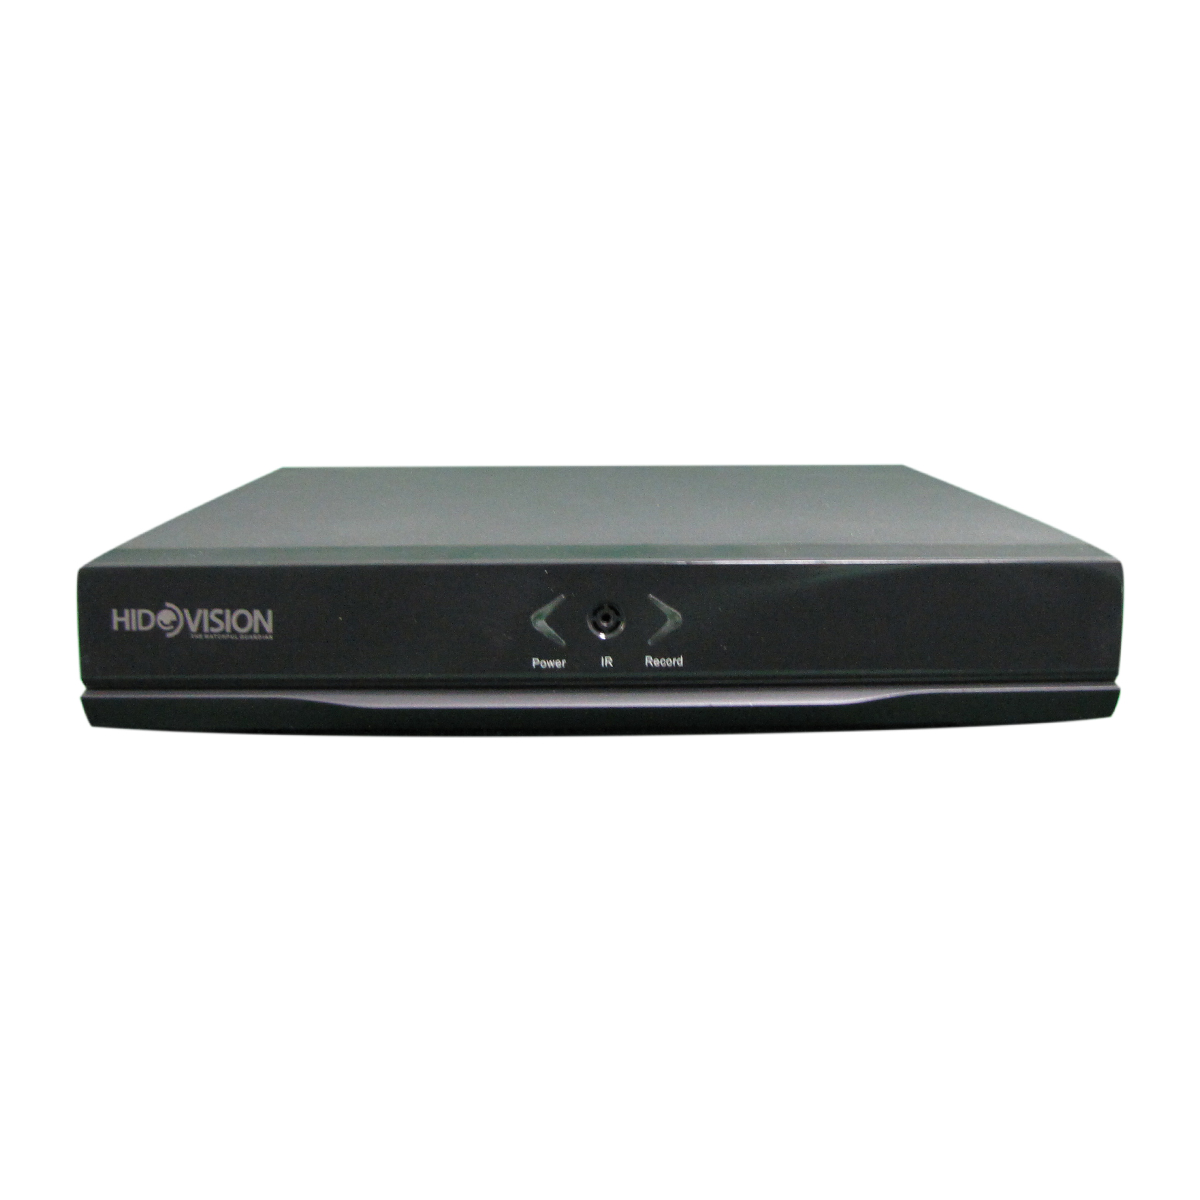 ضبط کننده ویدیویی هایدويژن  مدل  1104LN